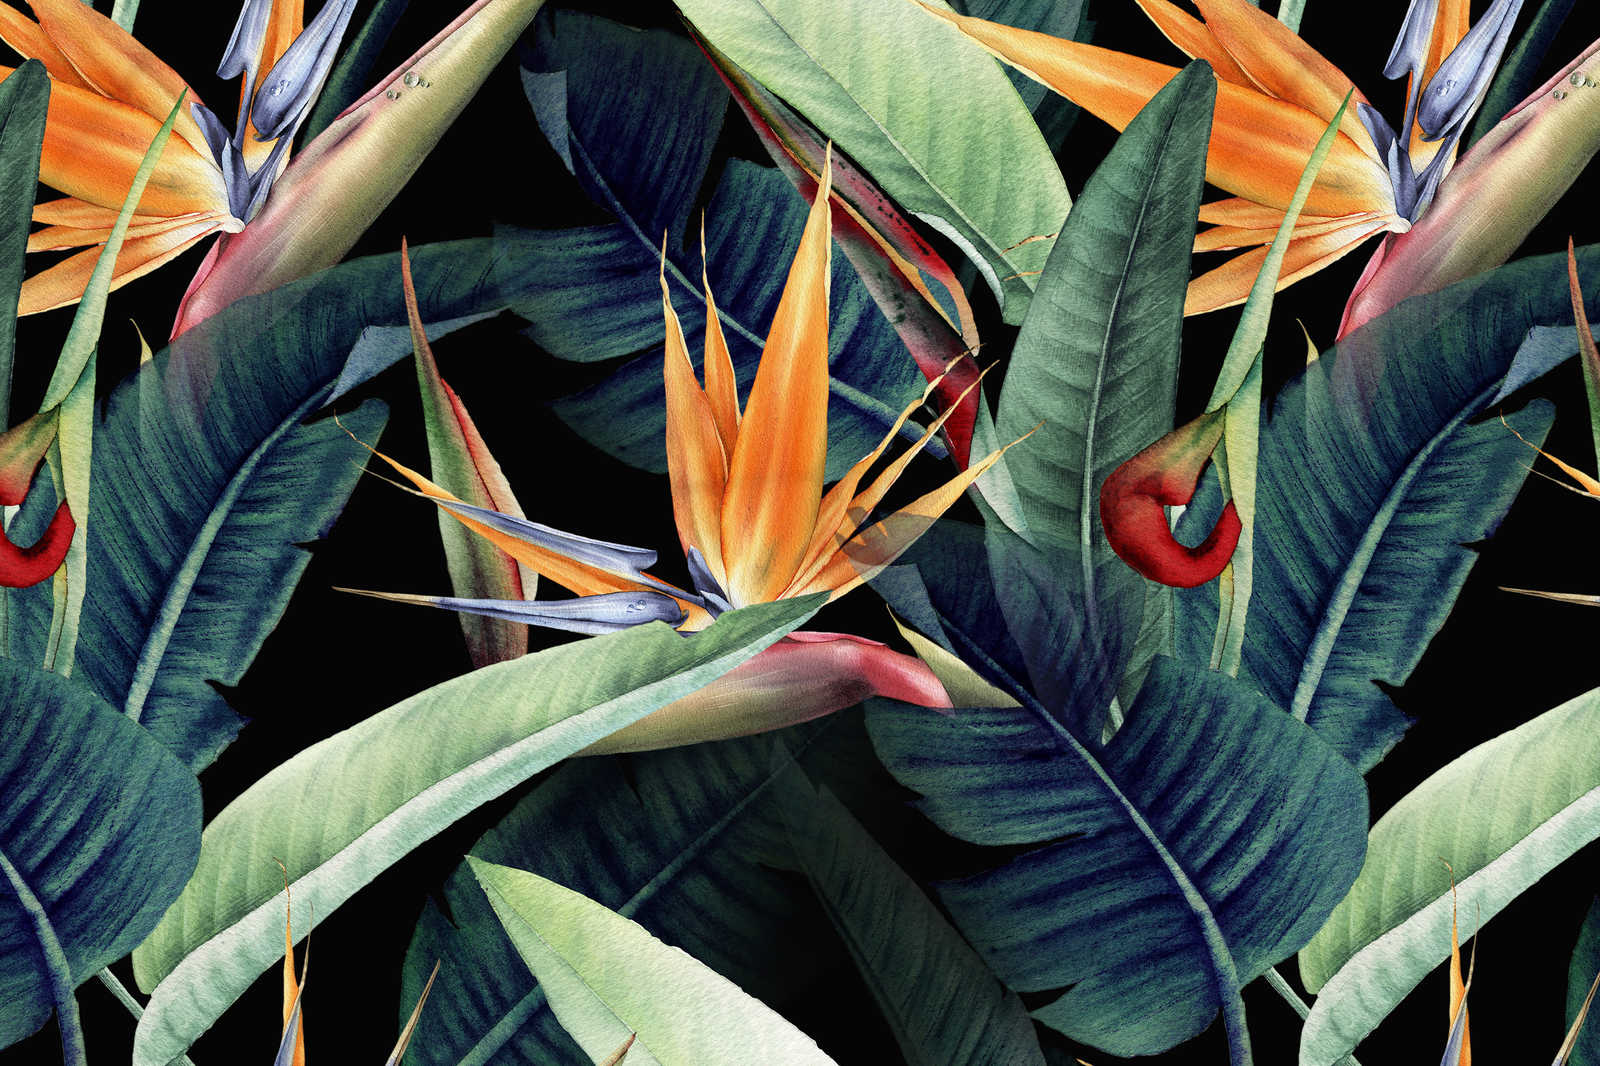             Leinwandbild Dschungelmotiv mit Blättern gemalt – 0,90 m x 0,60 m
        